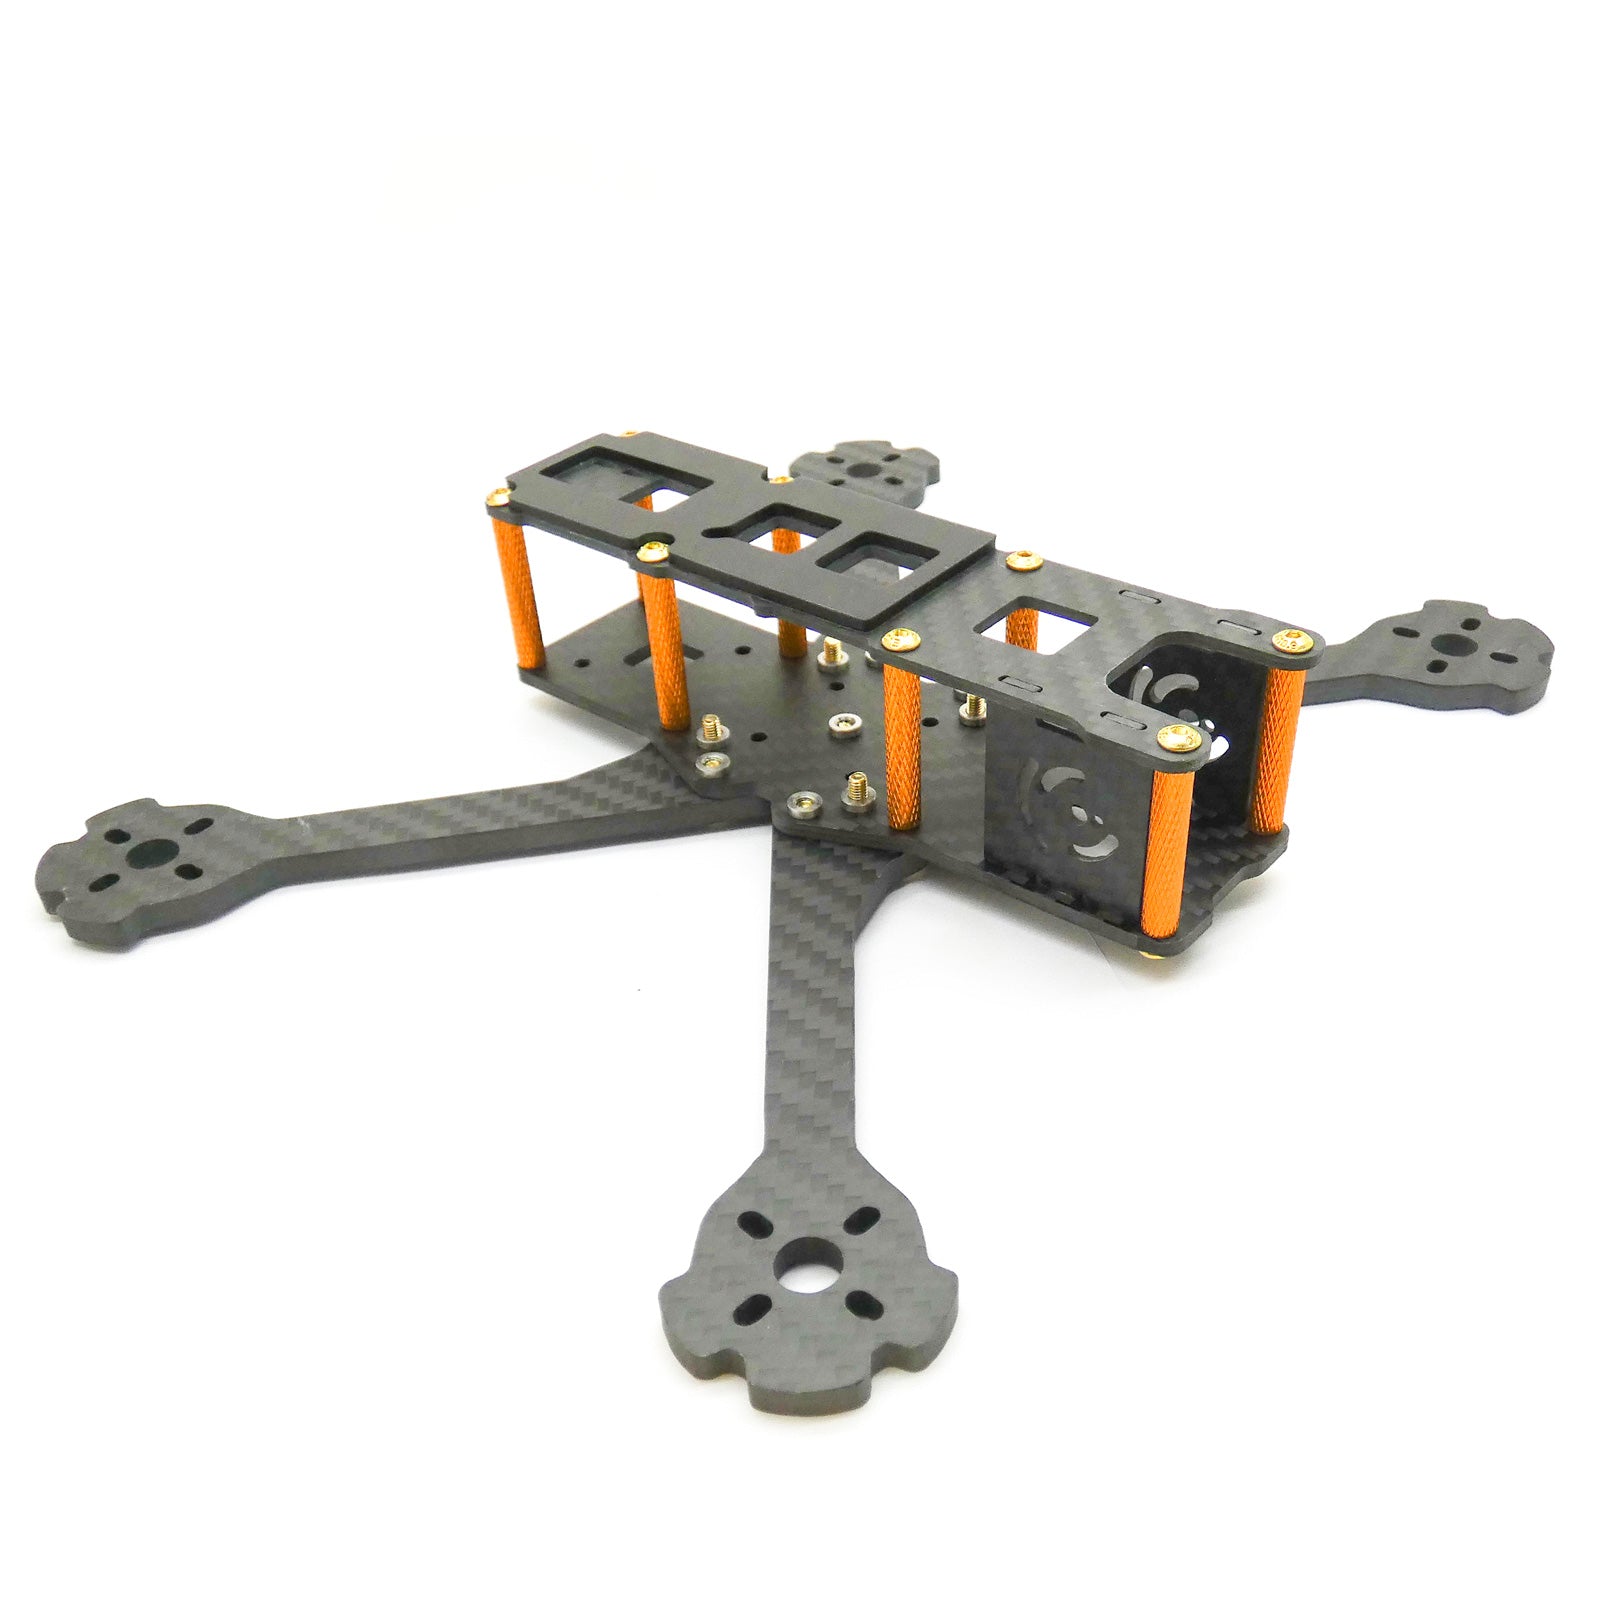 Light 220mm FPV Racing Drone Frame Kit for 5